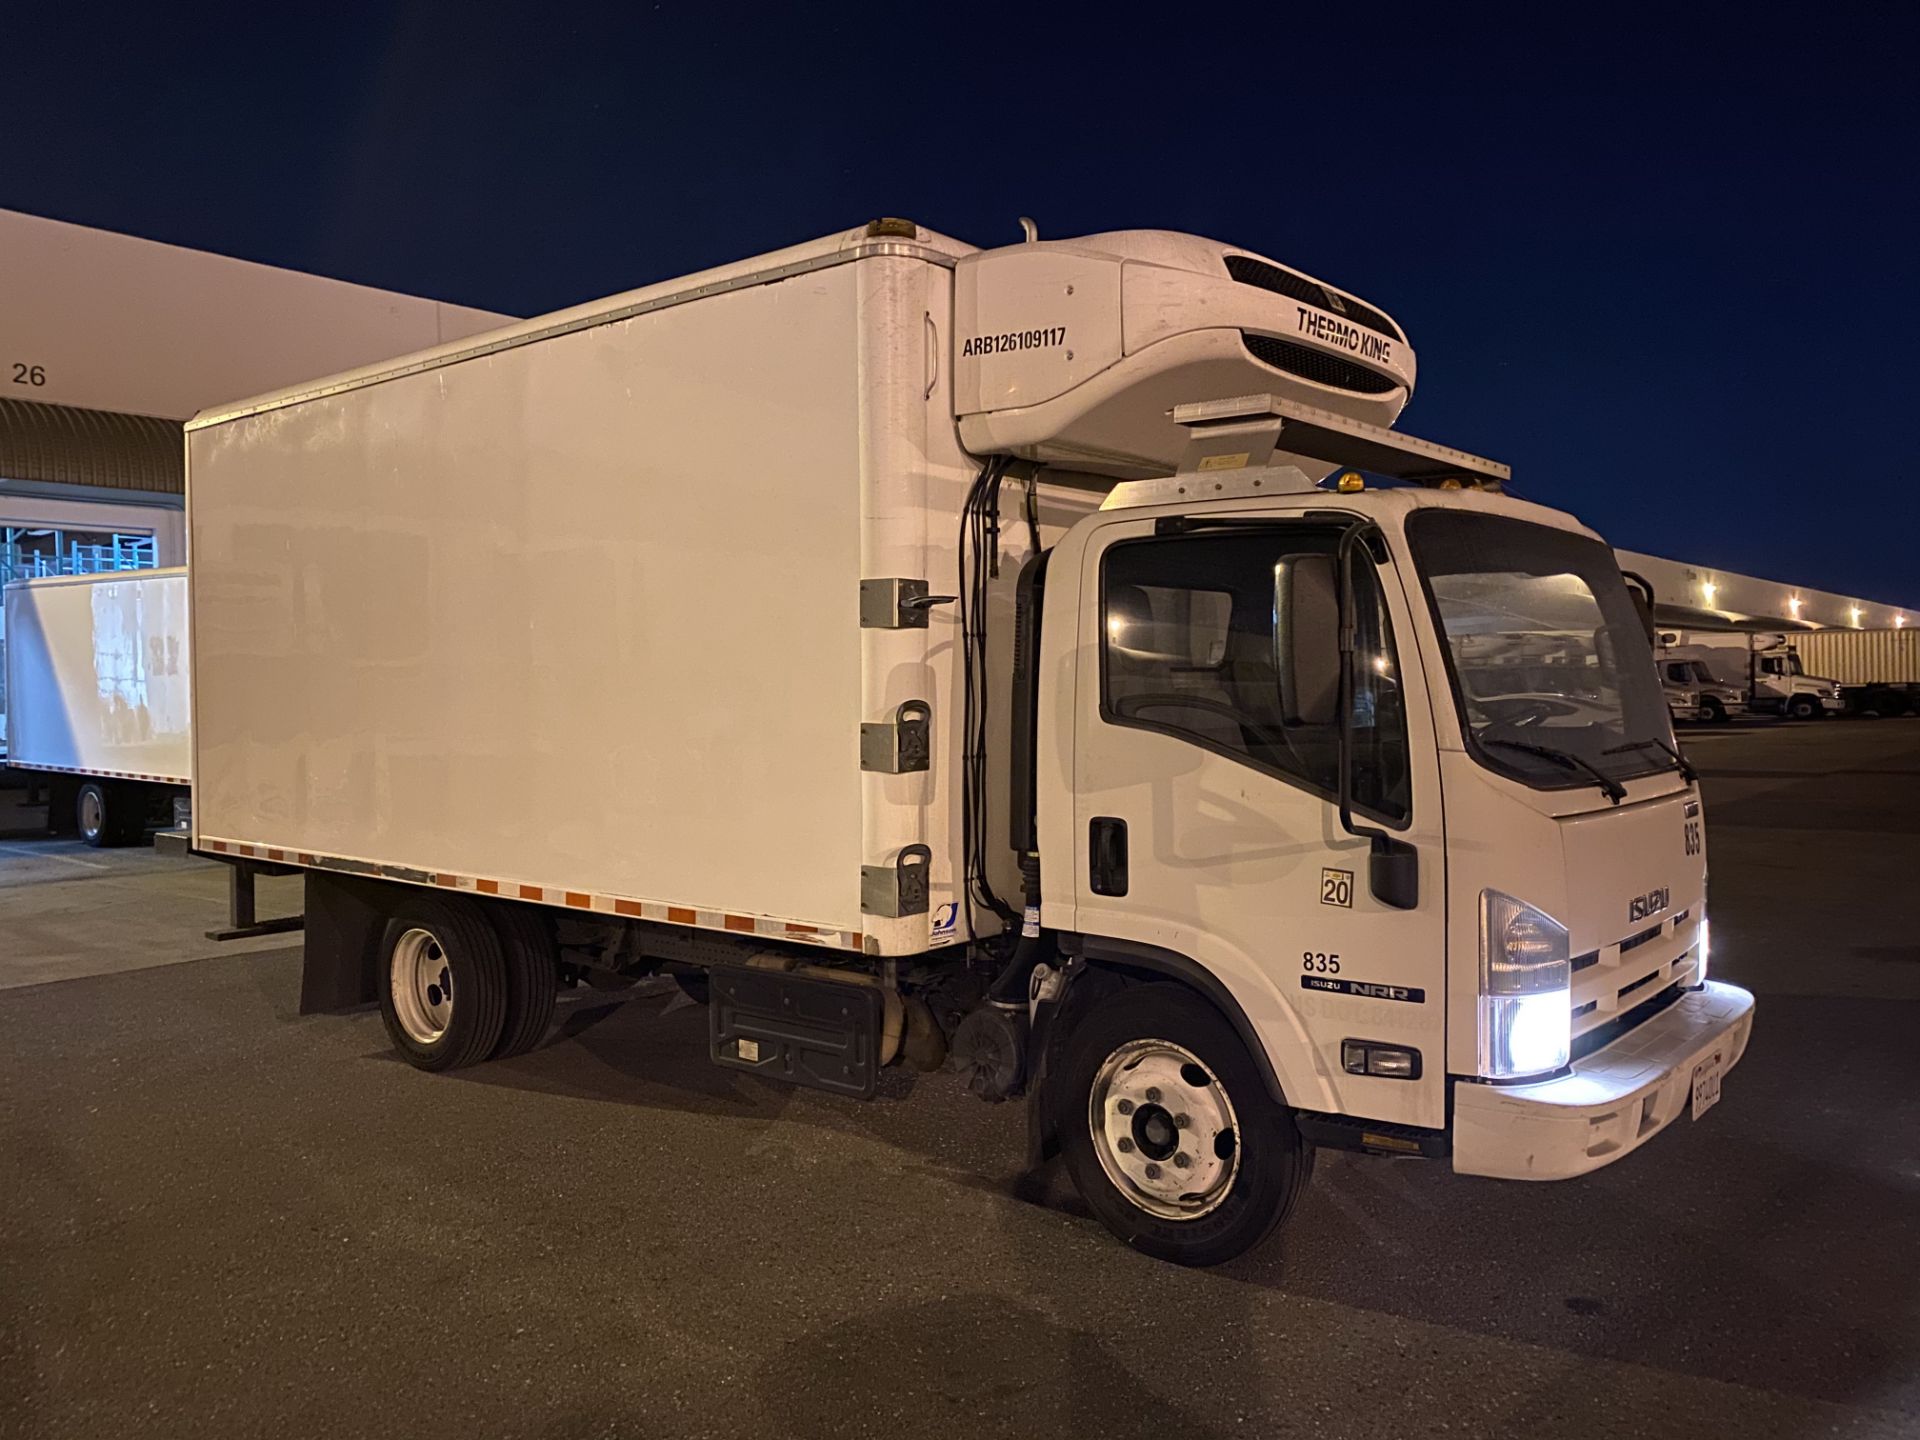 2013 Isuzu refrigerated truck - Image 4 of 9